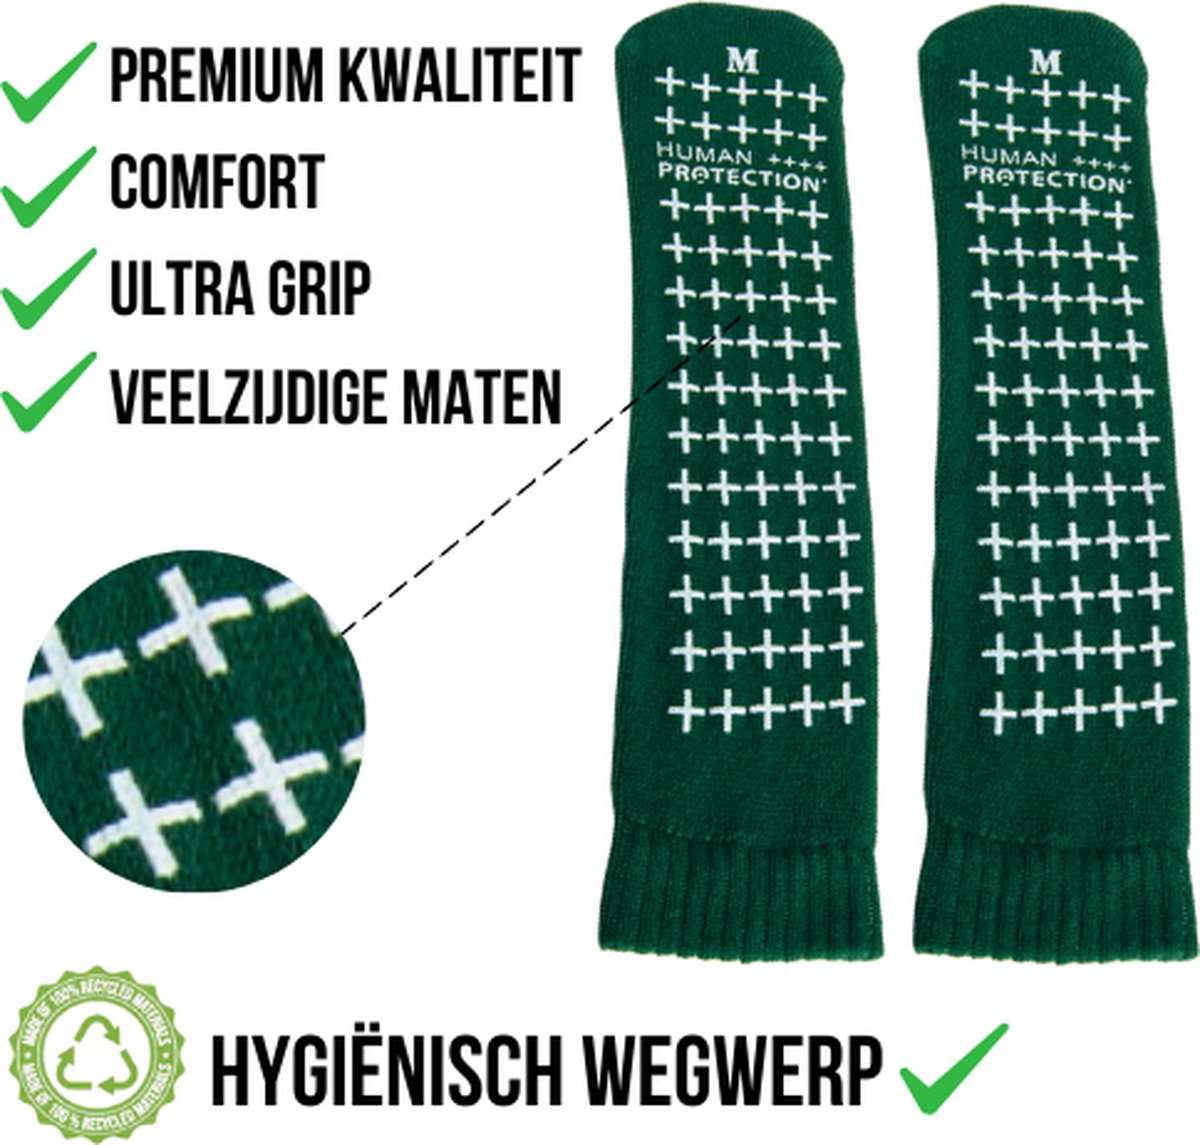 Human Protection Antislip Sokken - Valpreventie voor Ziekenhuis & Thuis - Disposable, Dubbele Grip - Groen/Geel - Maten S/M/L - Latexvrij, 80% Katoen 20% Polyester - Per Paar - Human Protection